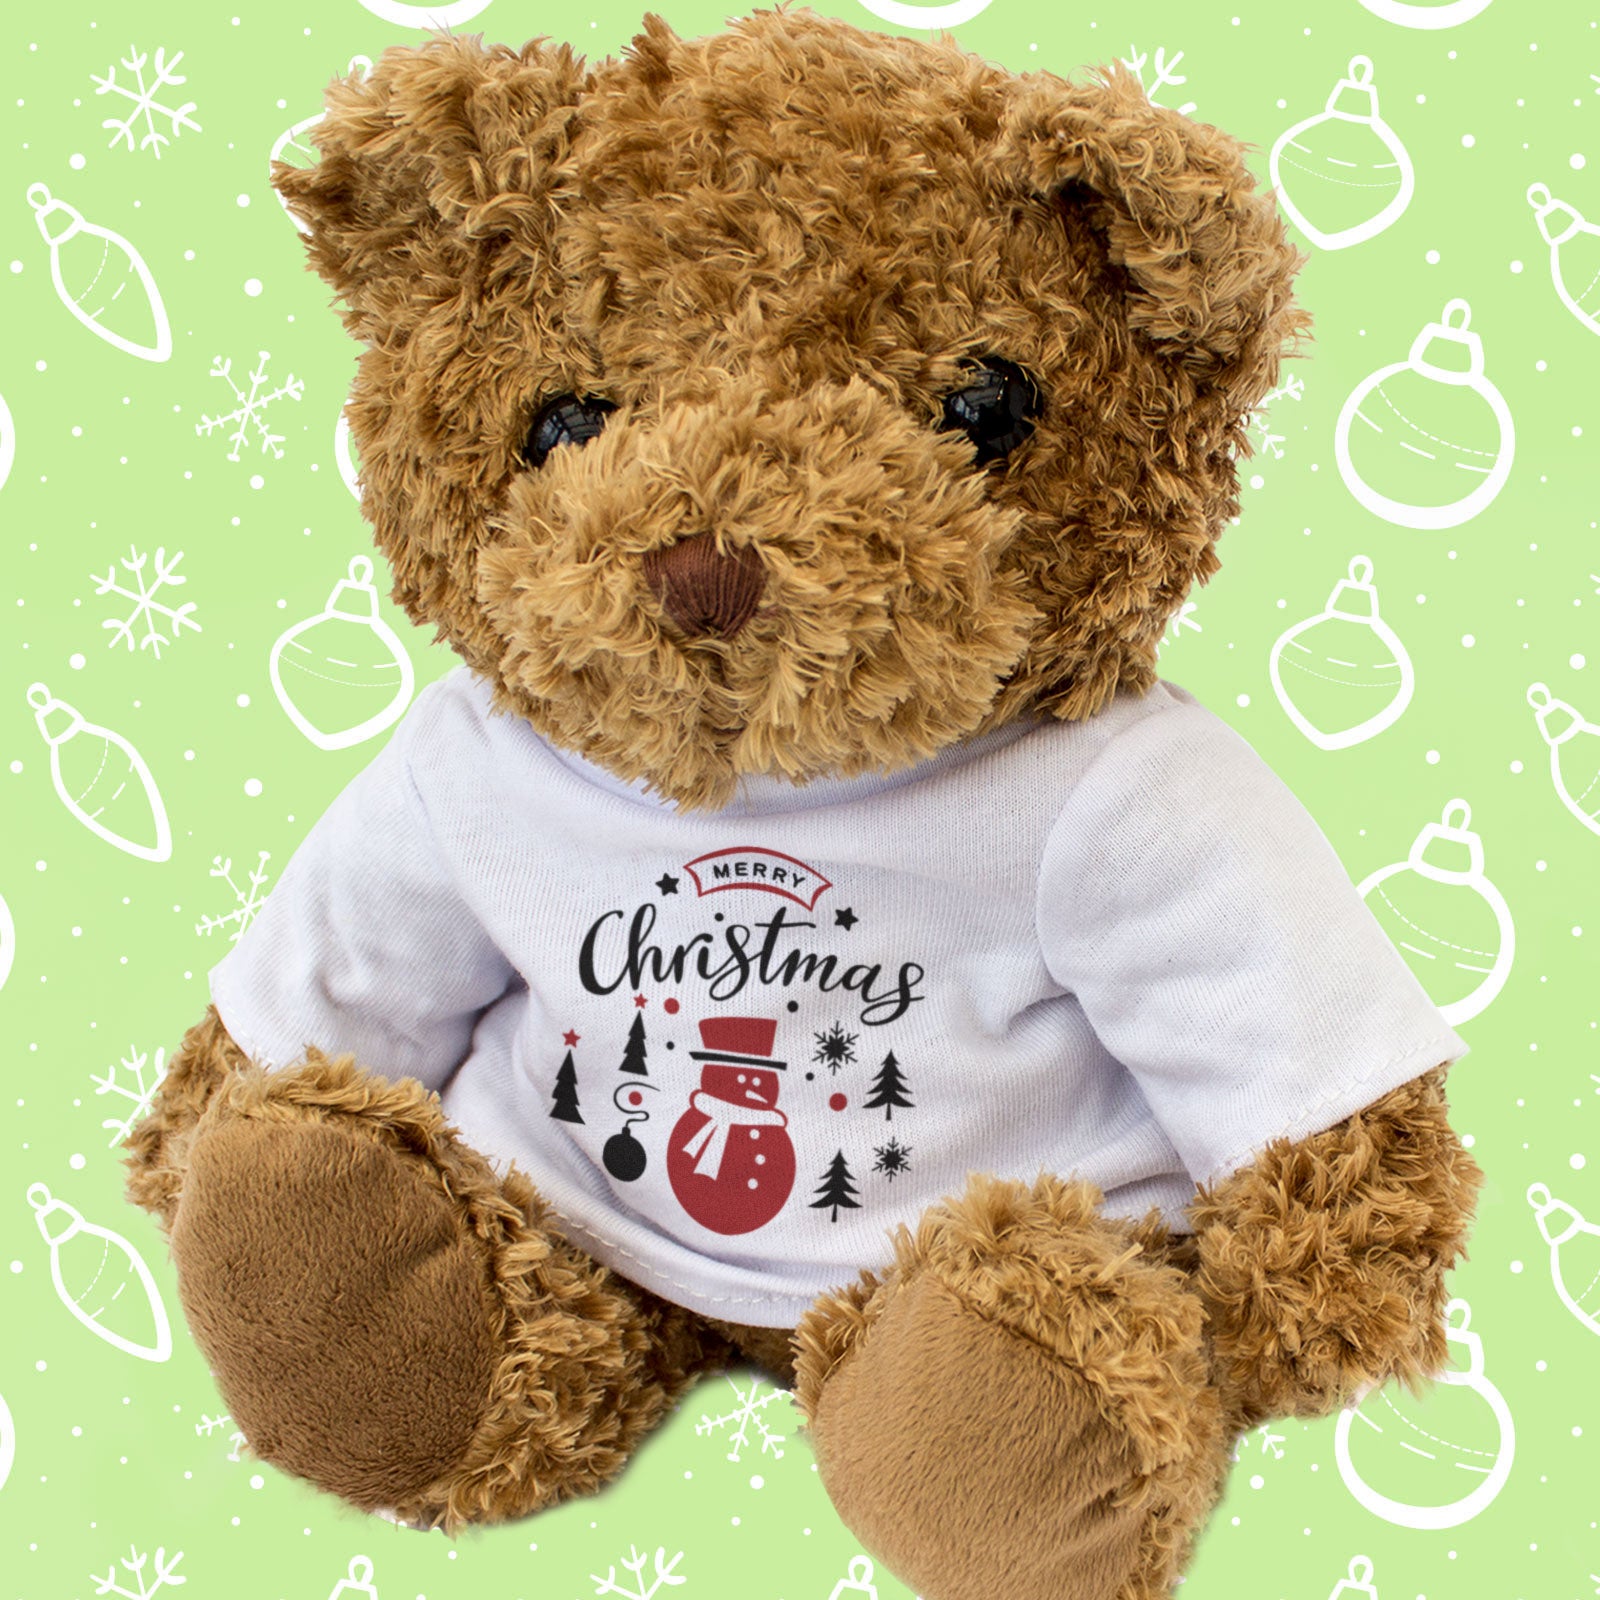 Merry Christmas Teddy Bear Snowman Design